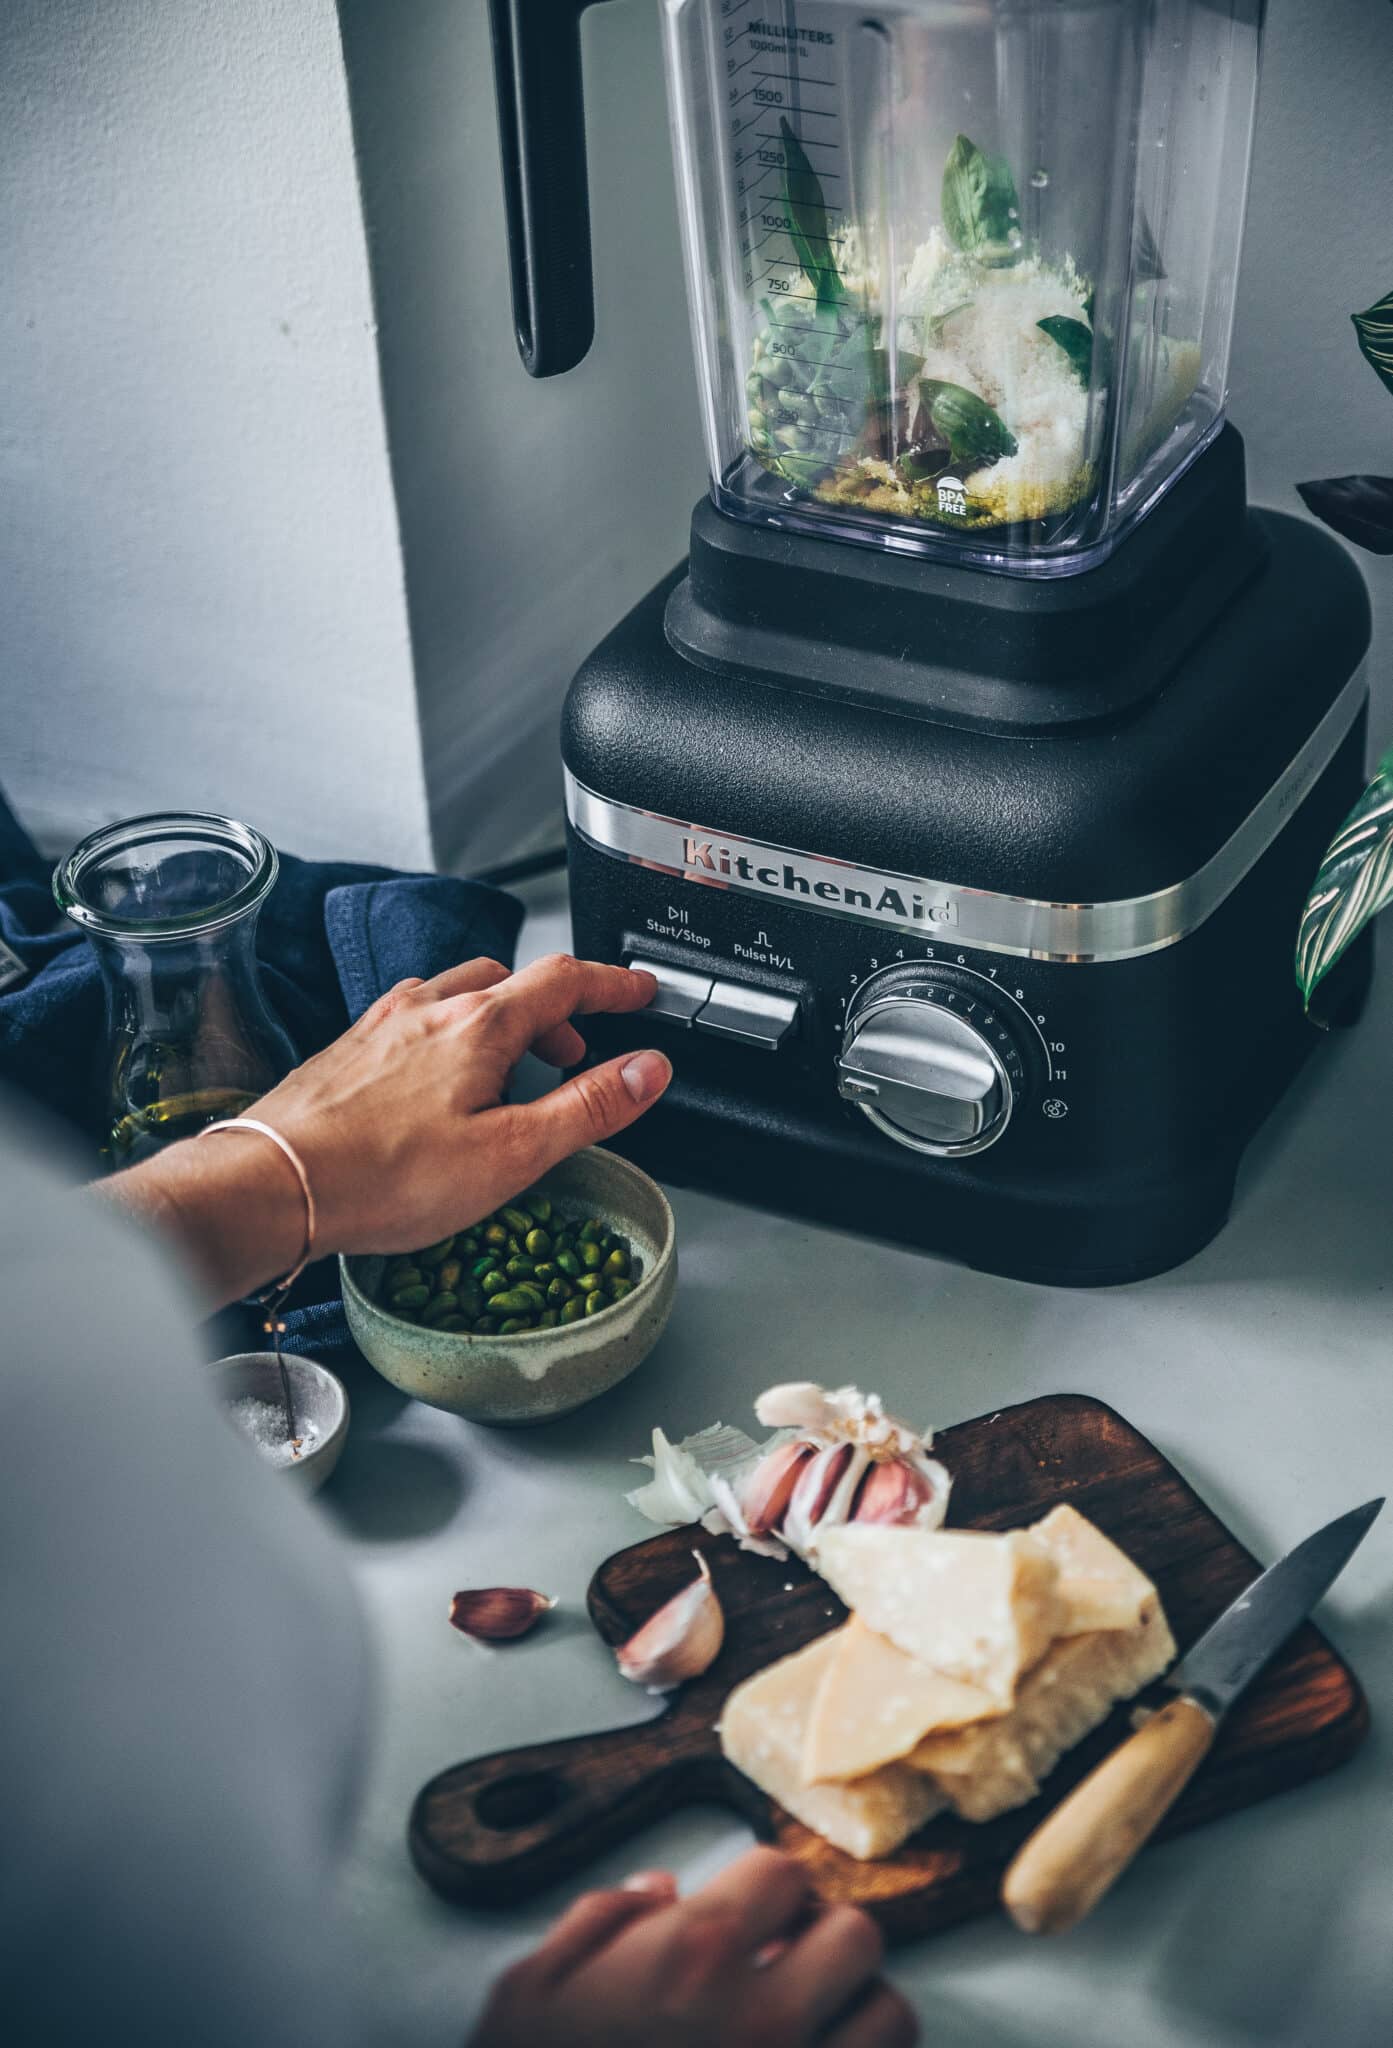 Photographie culinaire montrant une styliste culinaire en train de mixer des ingrédients dans un appareil de cuisine.
